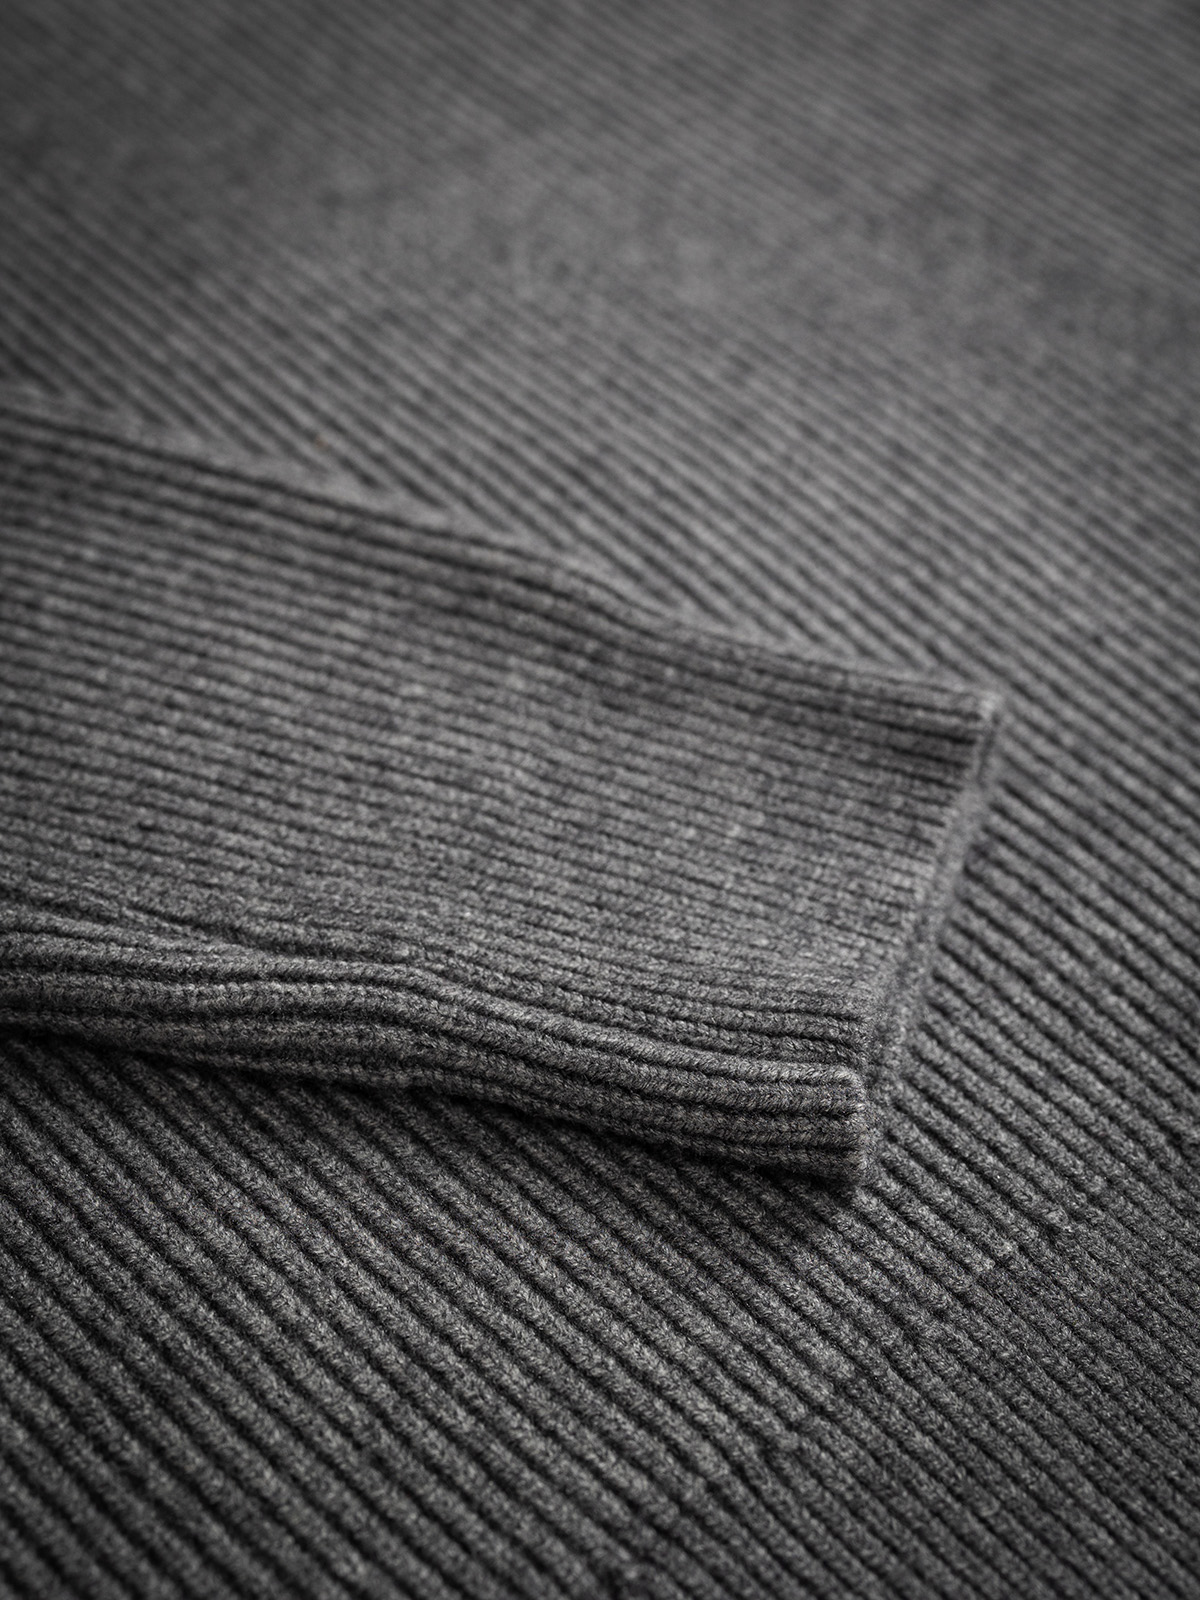 Grey Knit Zipper 1608 WEAR